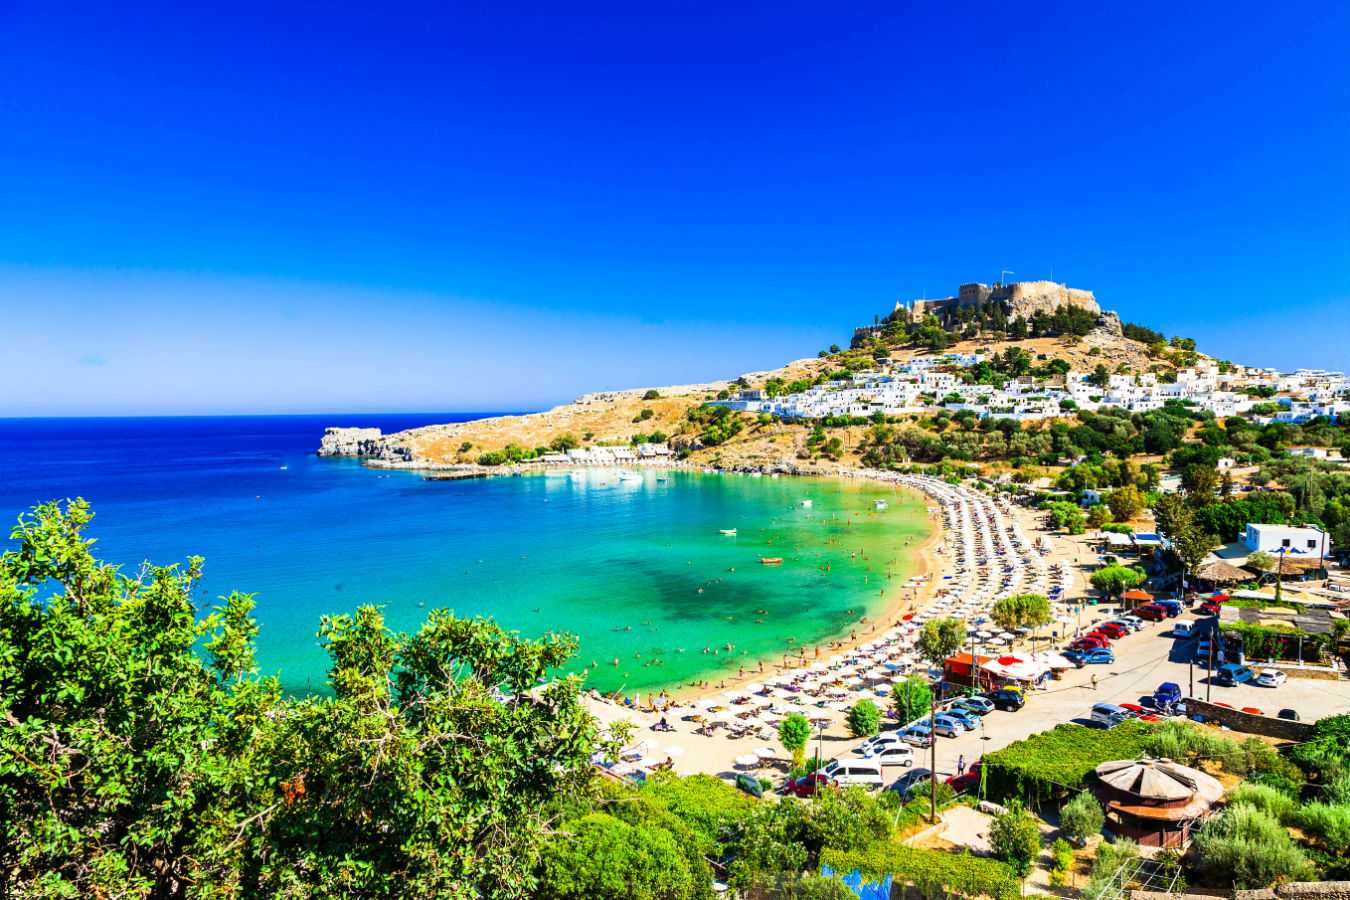 ☀ погода в греции по месяцам или 4 времени года для отдыха по-гречески